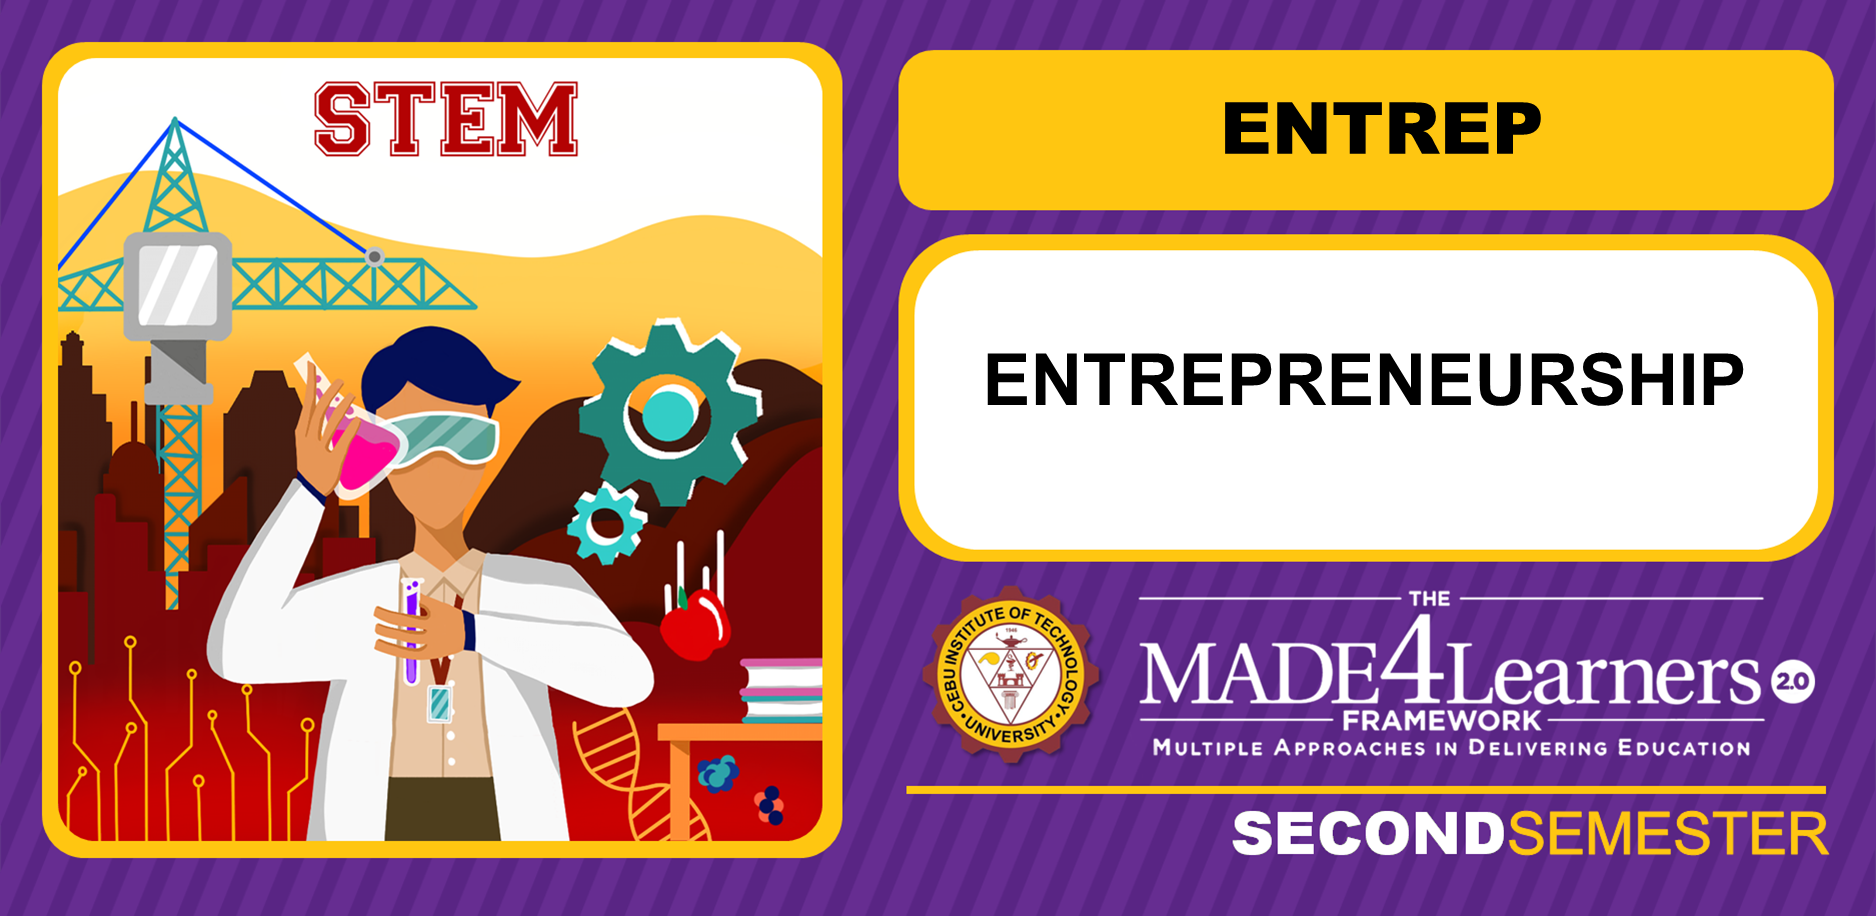 ENTREP: Entrepreneurship (Calo)